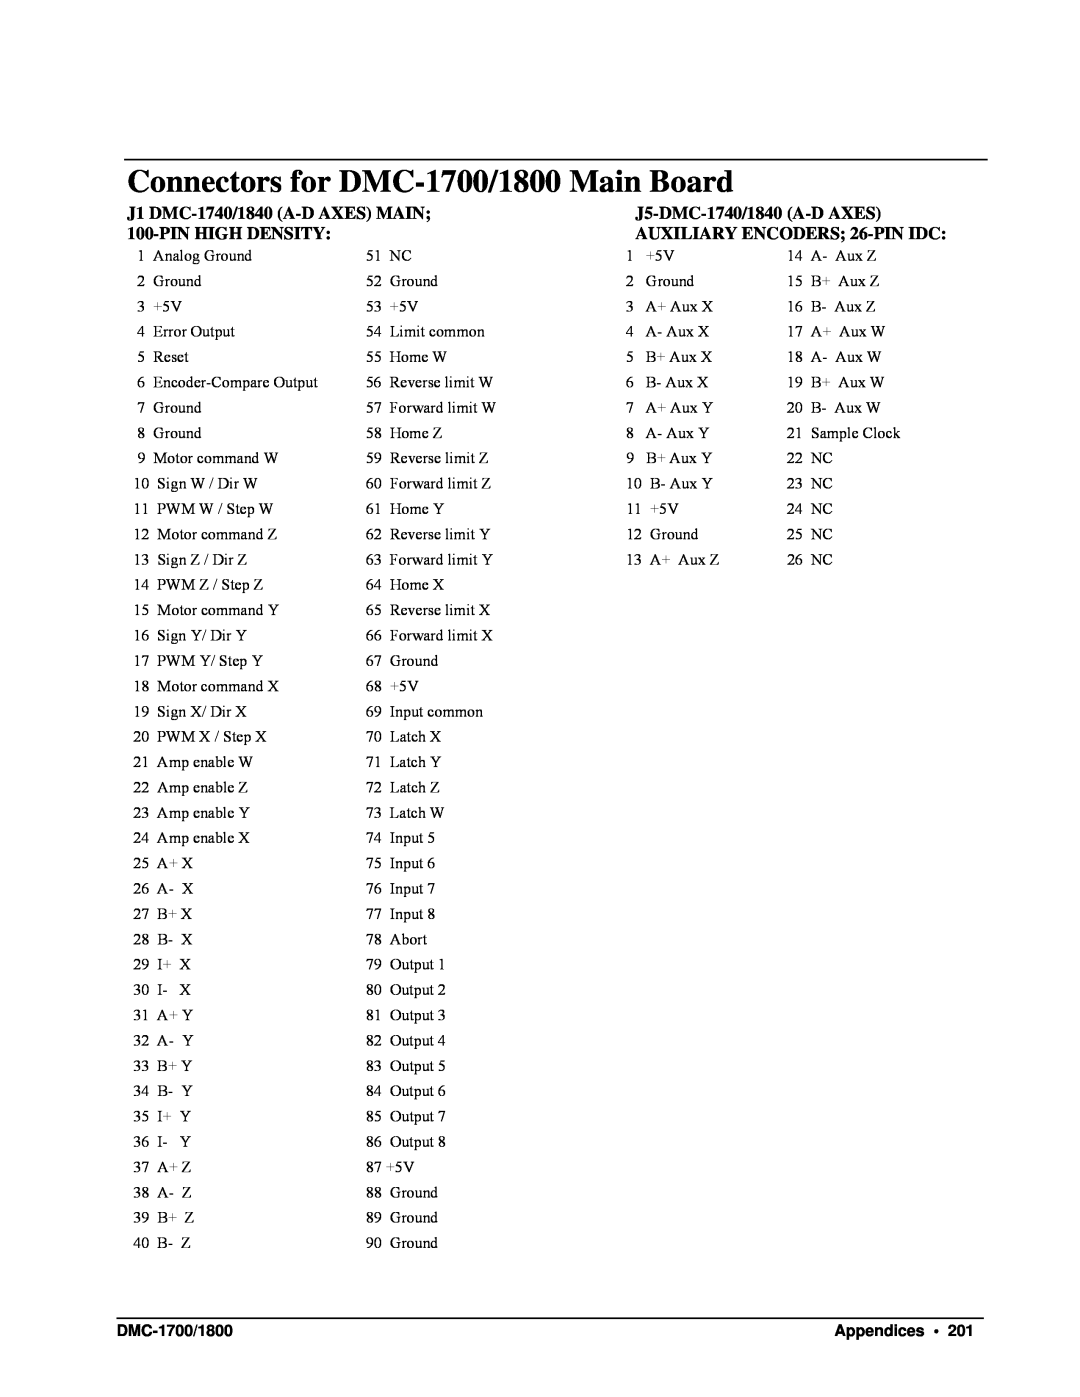 Galil DMC-1700 J1 DMC-1740/1840 A-DAXES MAIN, J5-DMC-1740/1840 A-DAXES, Pinhigh Density, AUXILIARY ENCODERS; 26-PINIDC 